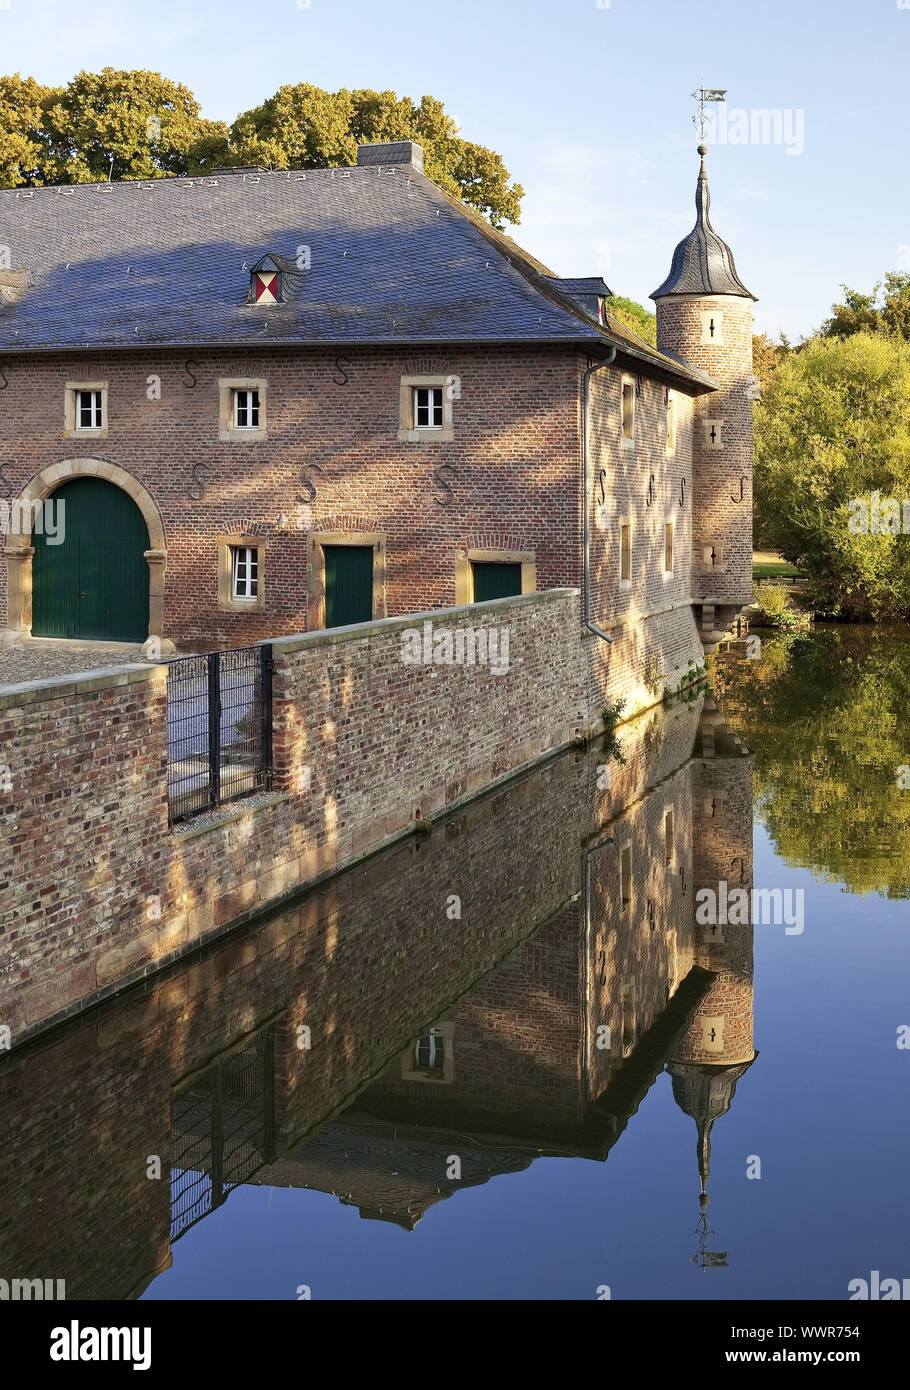 moated castle Burgau, Dueren, North Rhine-Westphalia, Germany, Europe Stock Photo